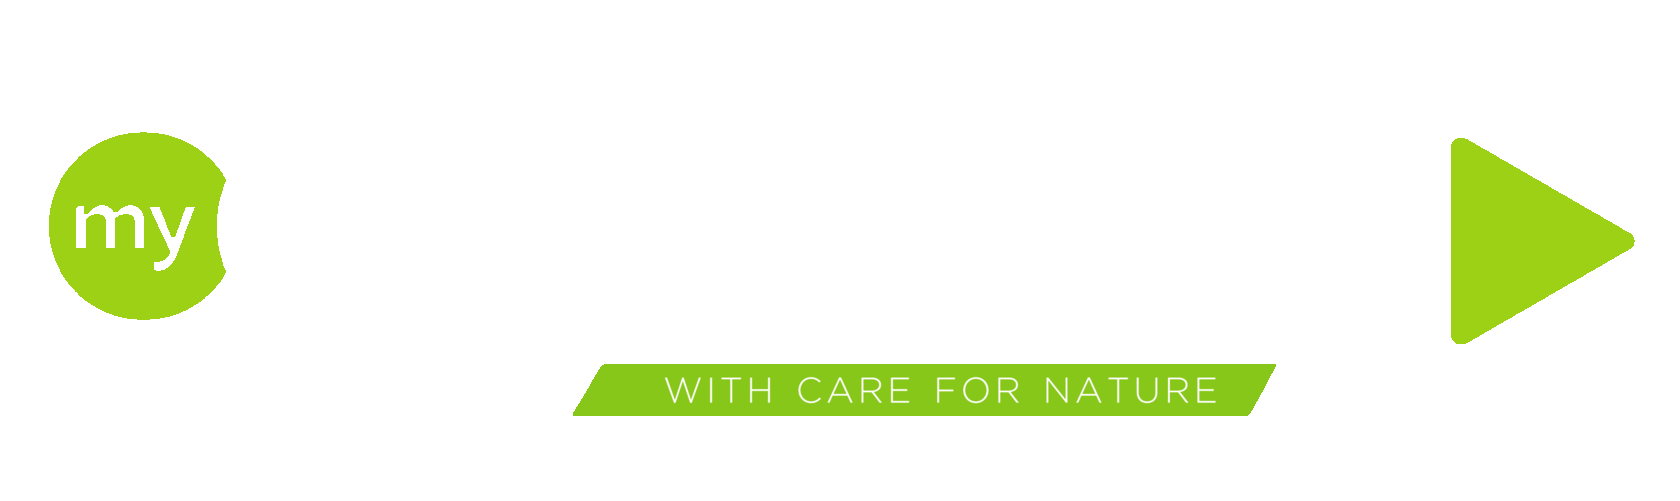 Гринвей вход по логин и пароль. Гринвей лого. Greenway новый логотип. Greenway на прозрачном фоне. My Greenway логотип вектор.